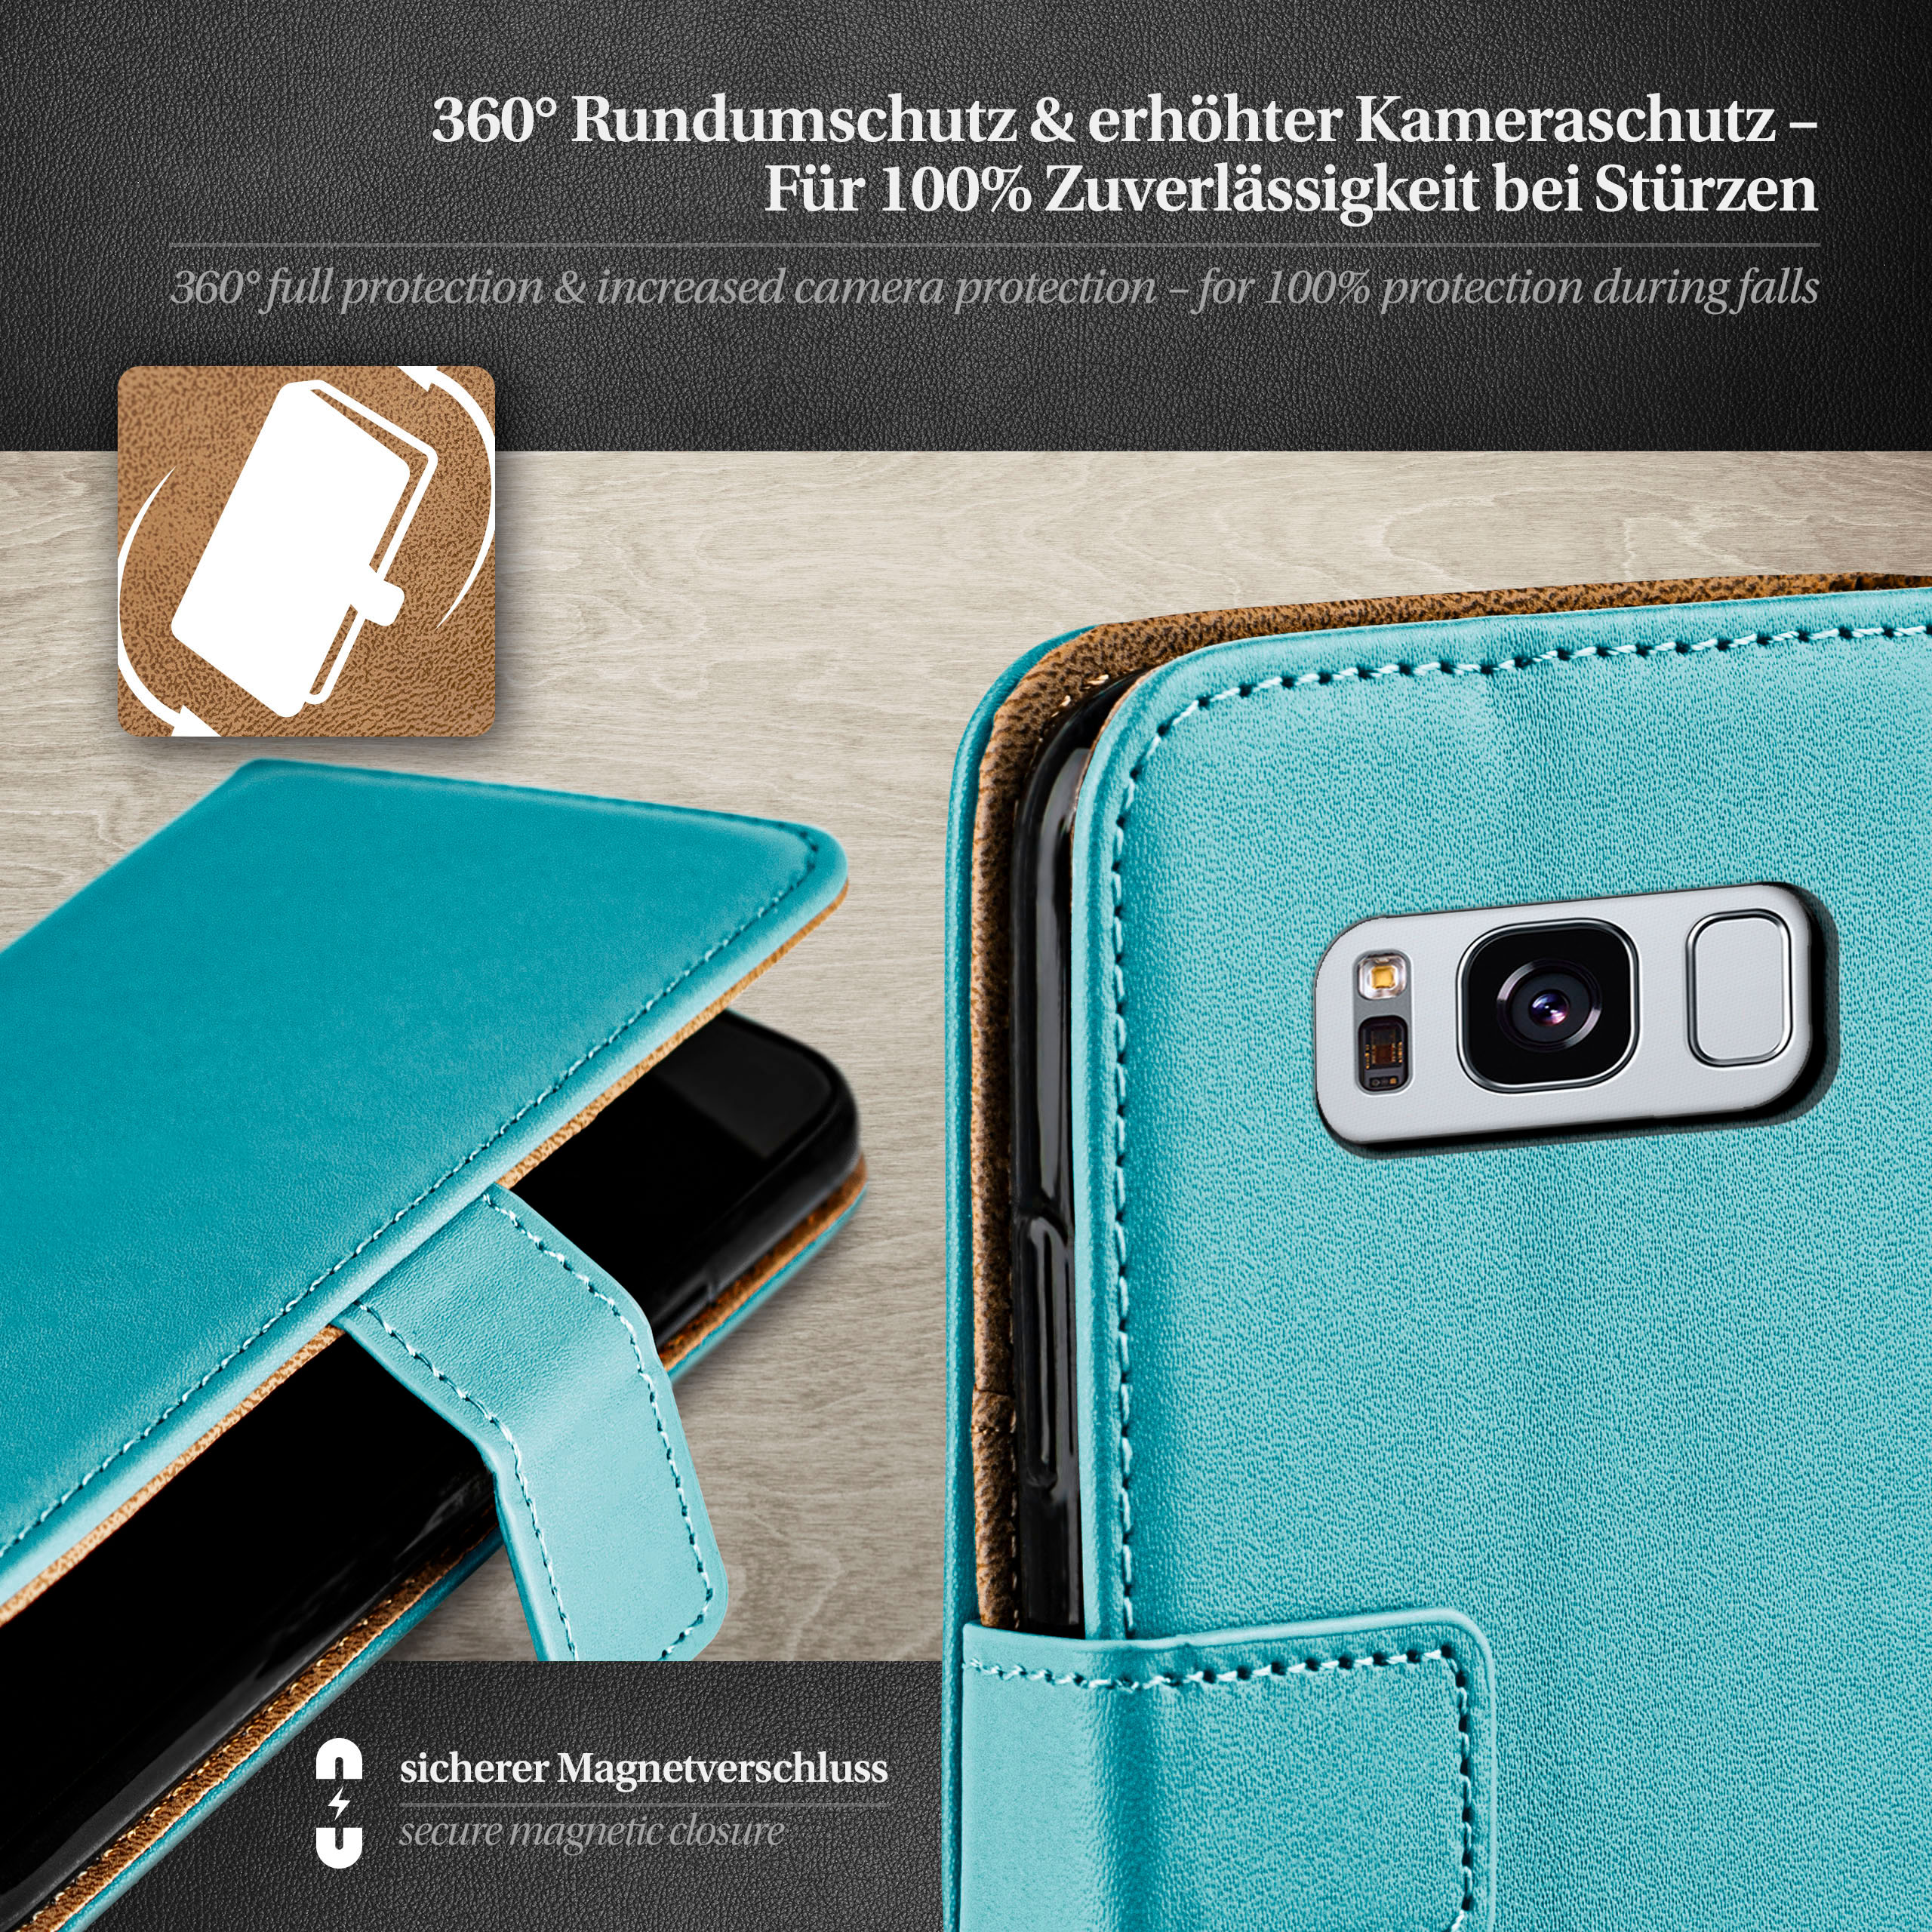 Bookcover, S8 Aqua-Cyan Samsung, Plus, Book Case, MOEX Galaxy